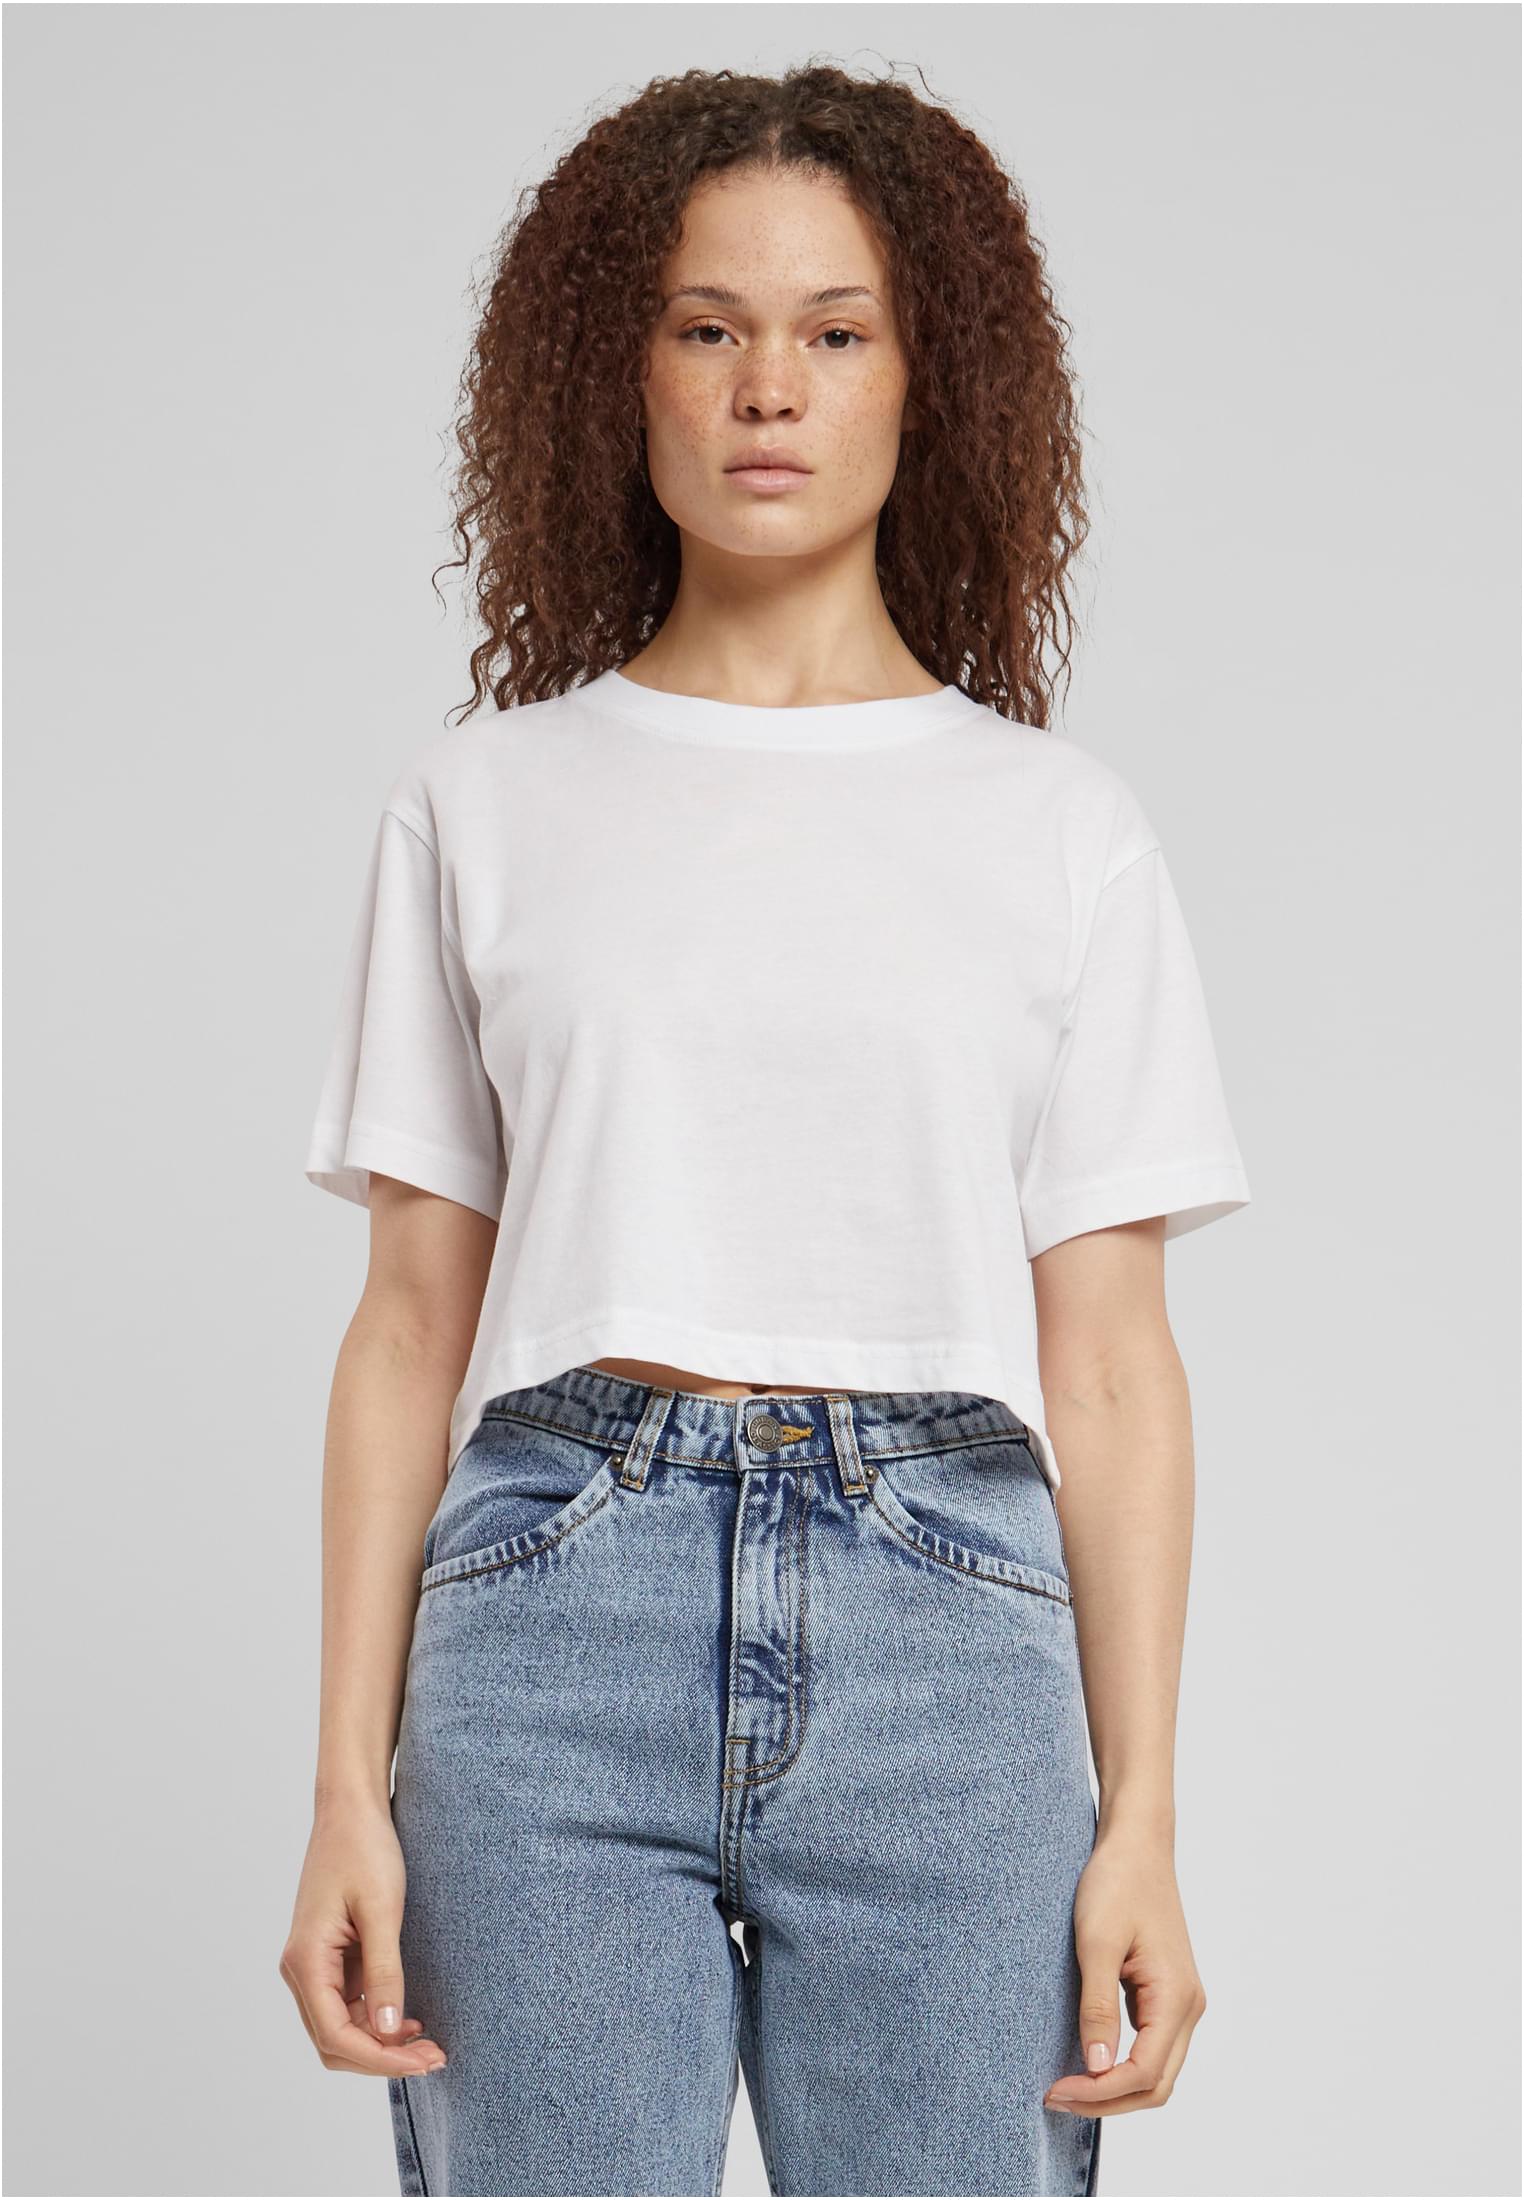 Women's short oversized T-shirt white